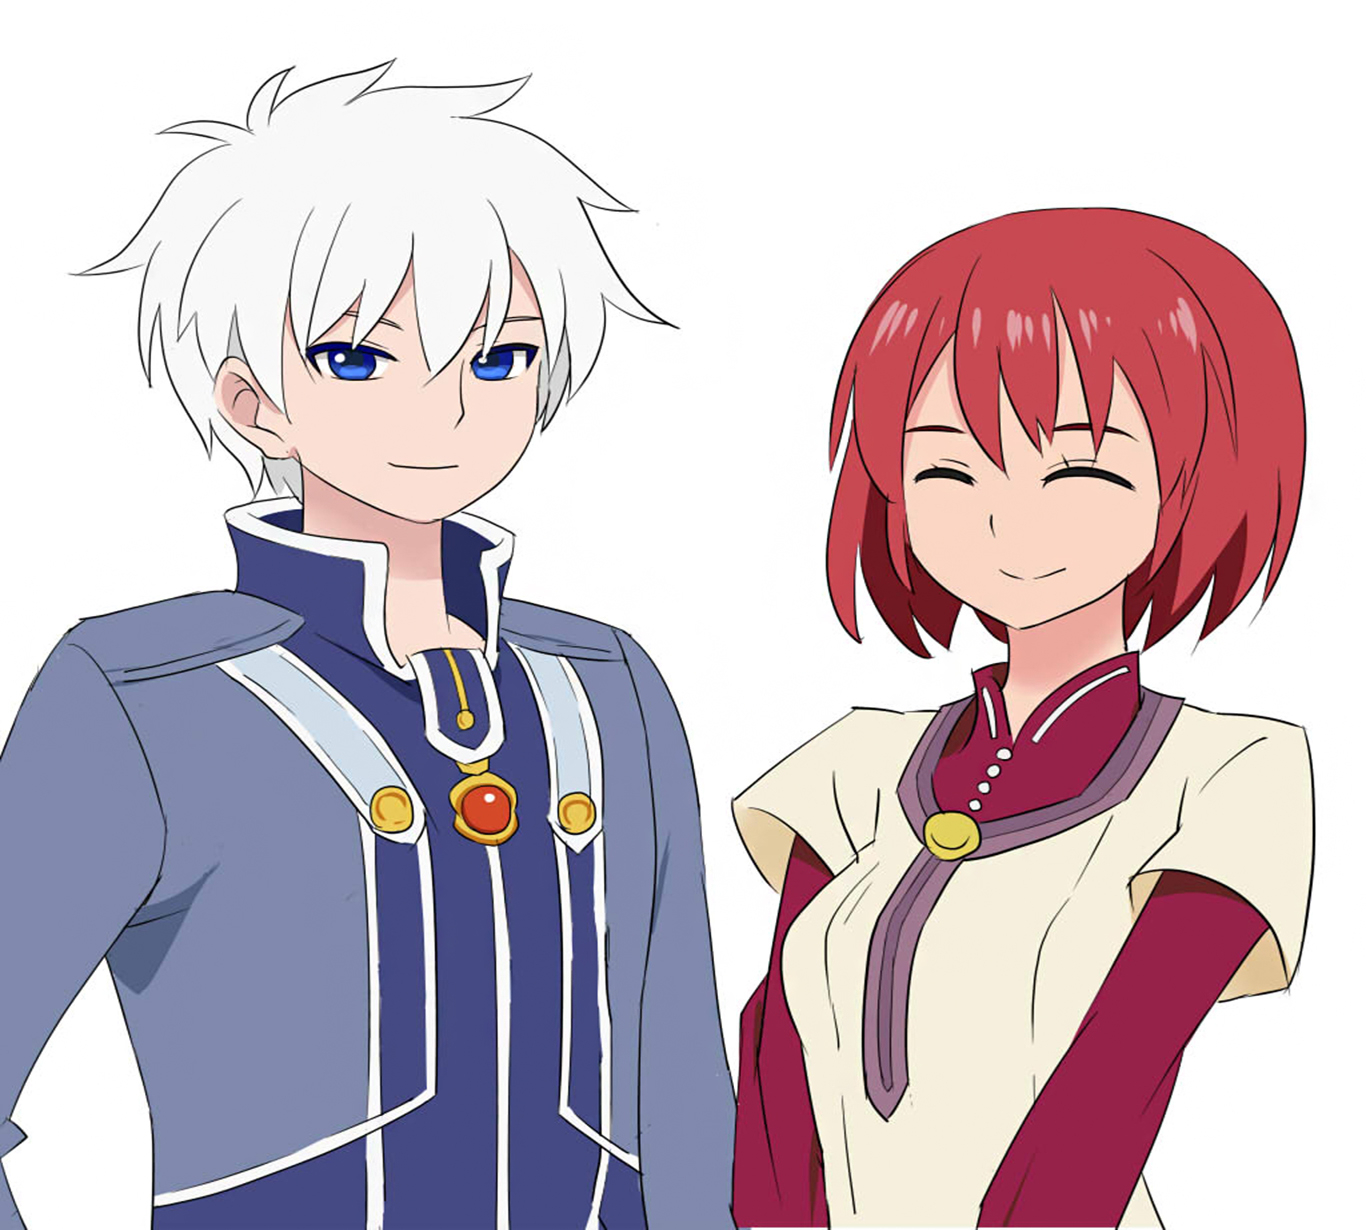 Zen and Shirayuki